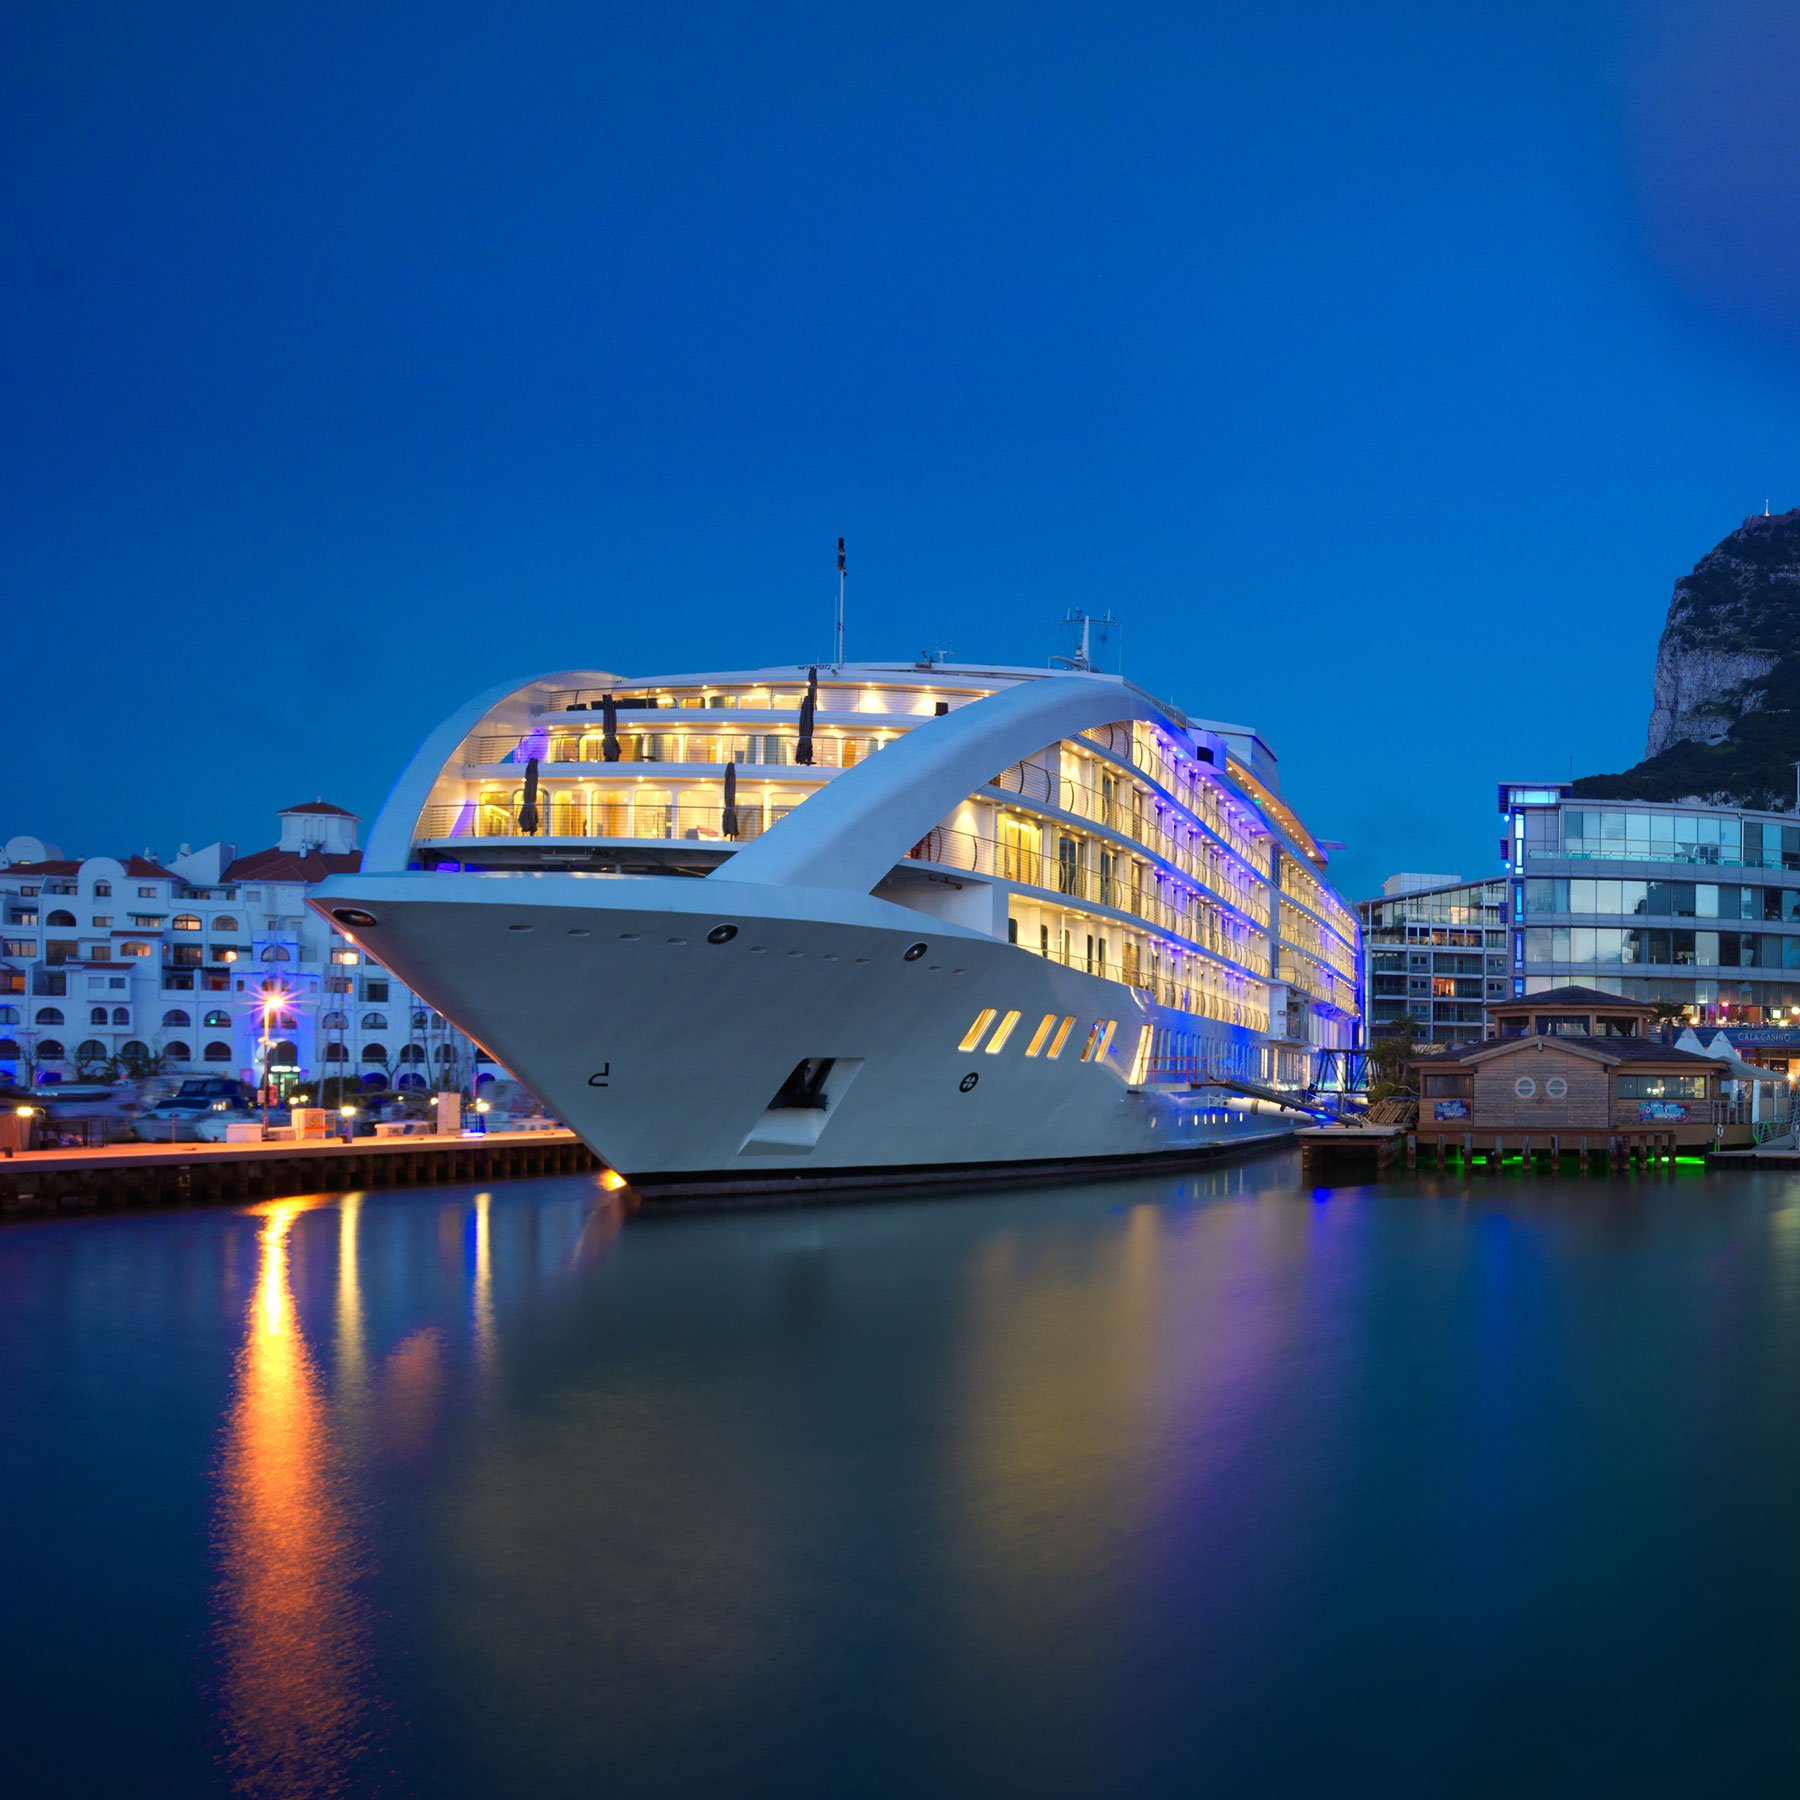 sunborn yacht gibraltar hotel & casino uk